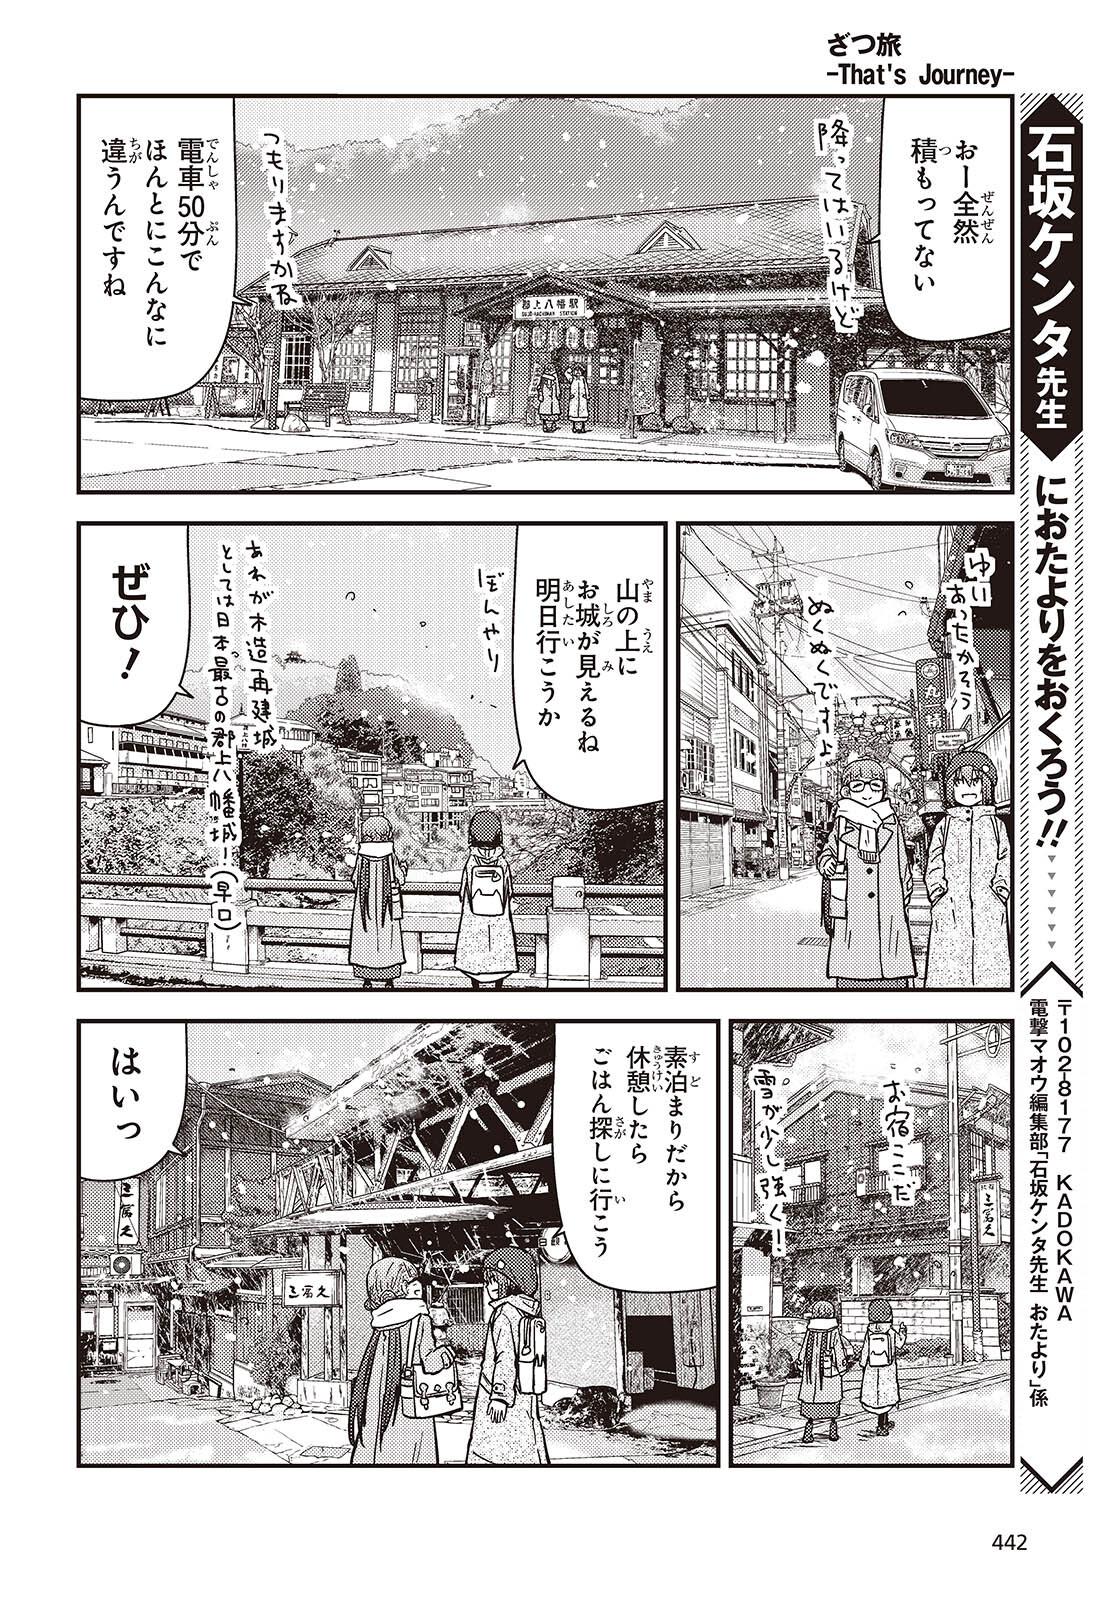 ざつ旅-That’s Journey- 第36話 - Page 14